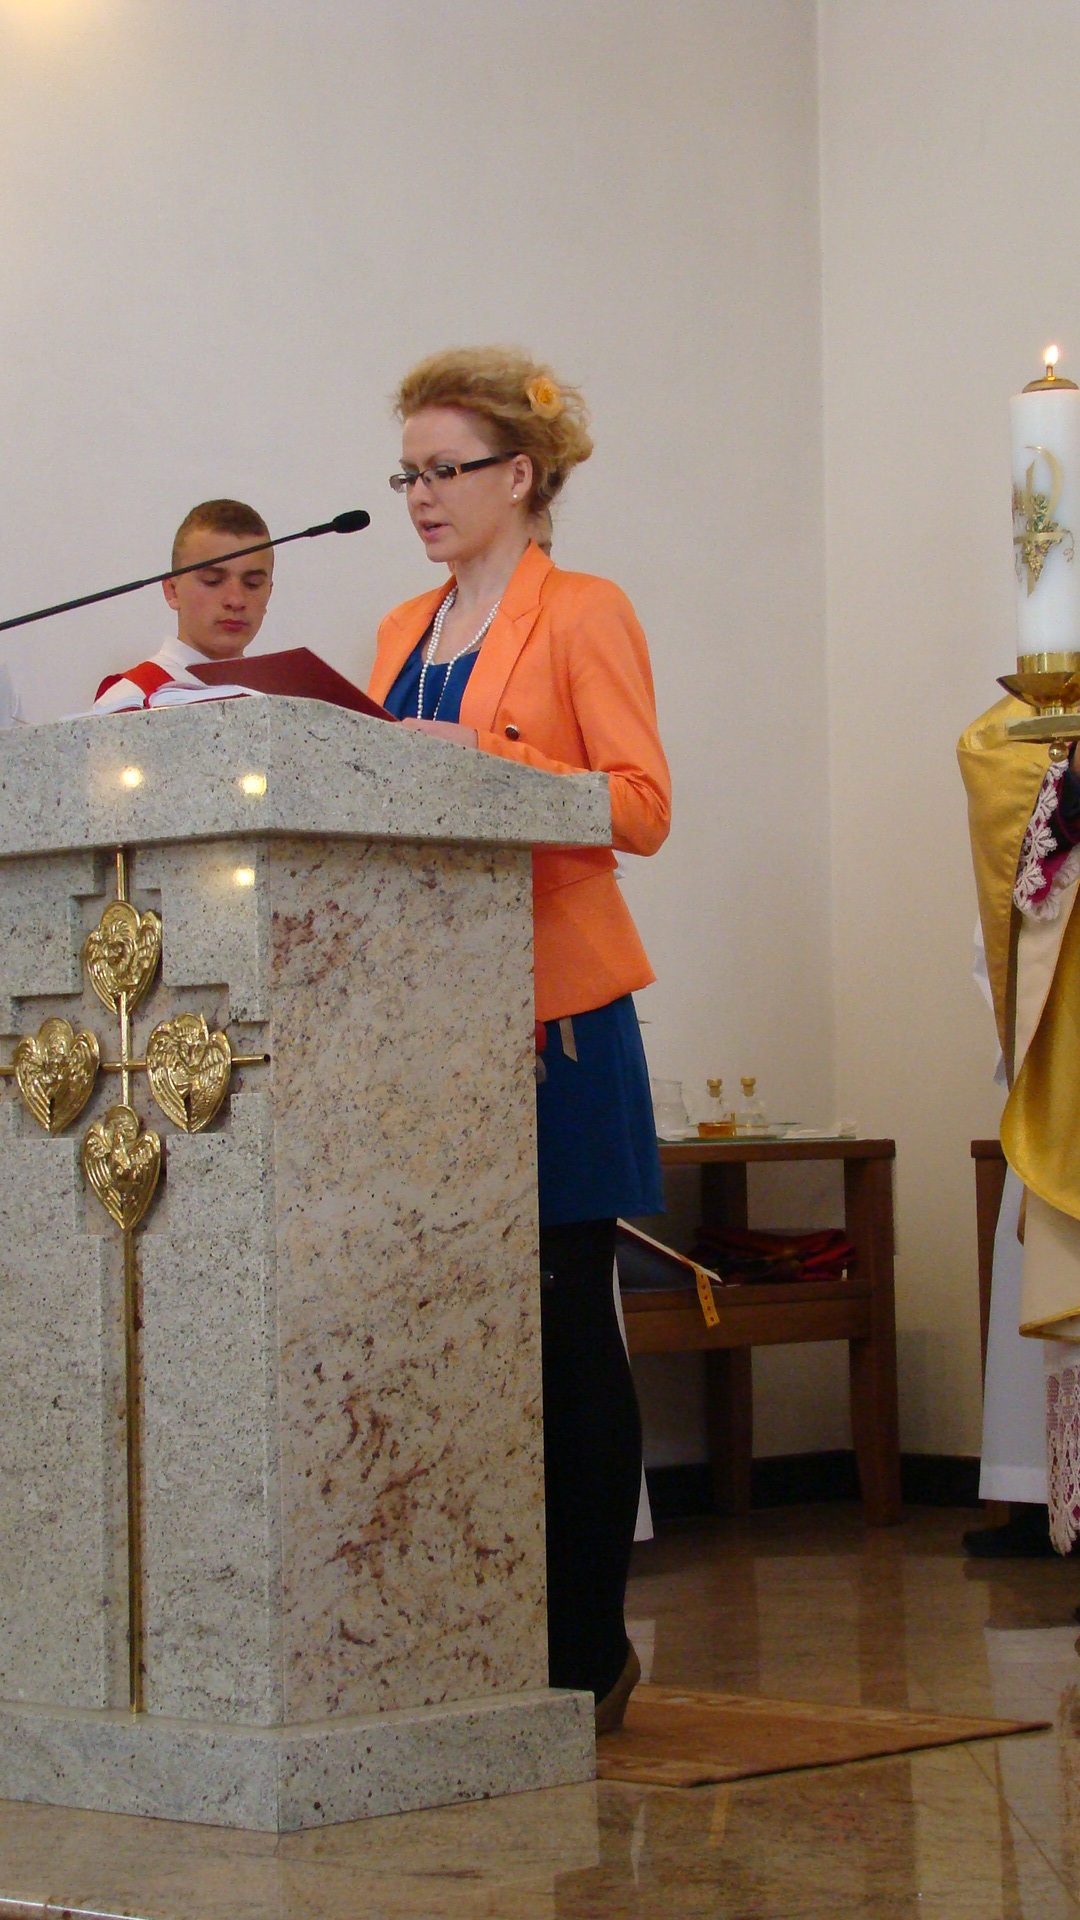 Niedziela Biblijna 2012, Parafia pw. Chrystusa Króla w Lublinie